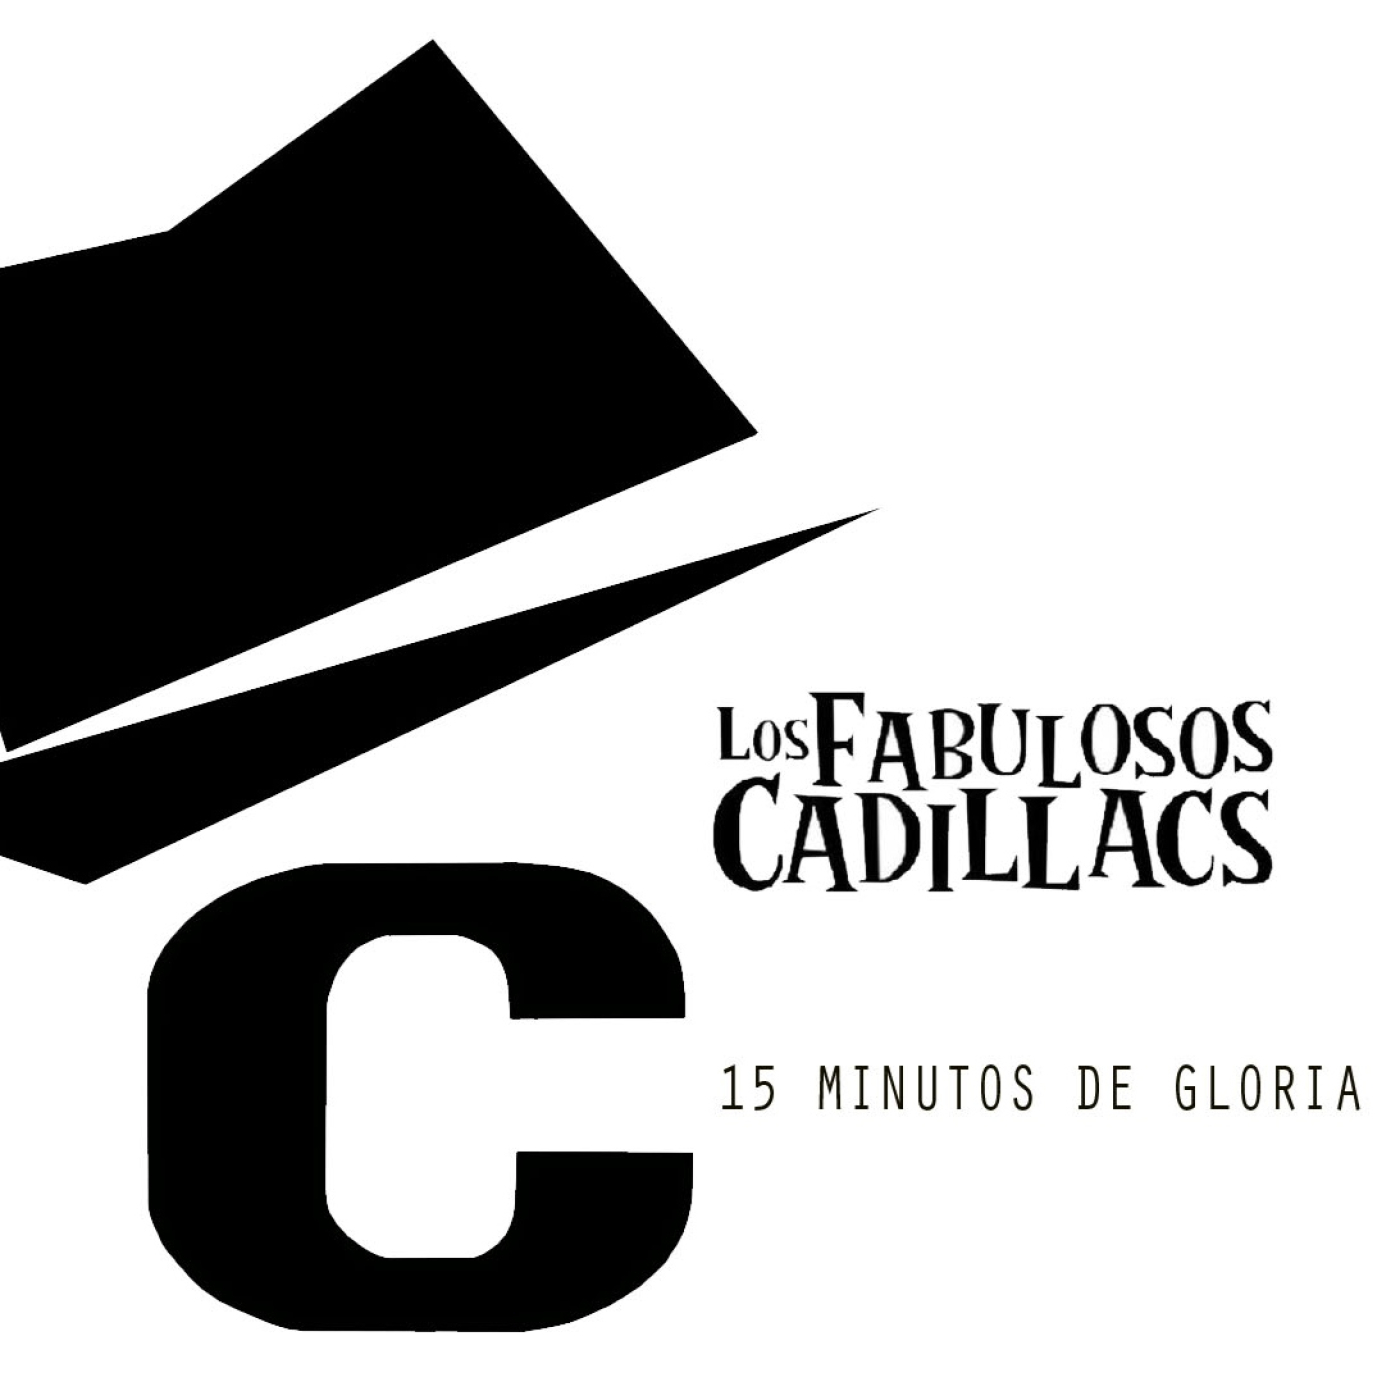 15 MInutos de Gloria Los Fabulosos Cadillacs